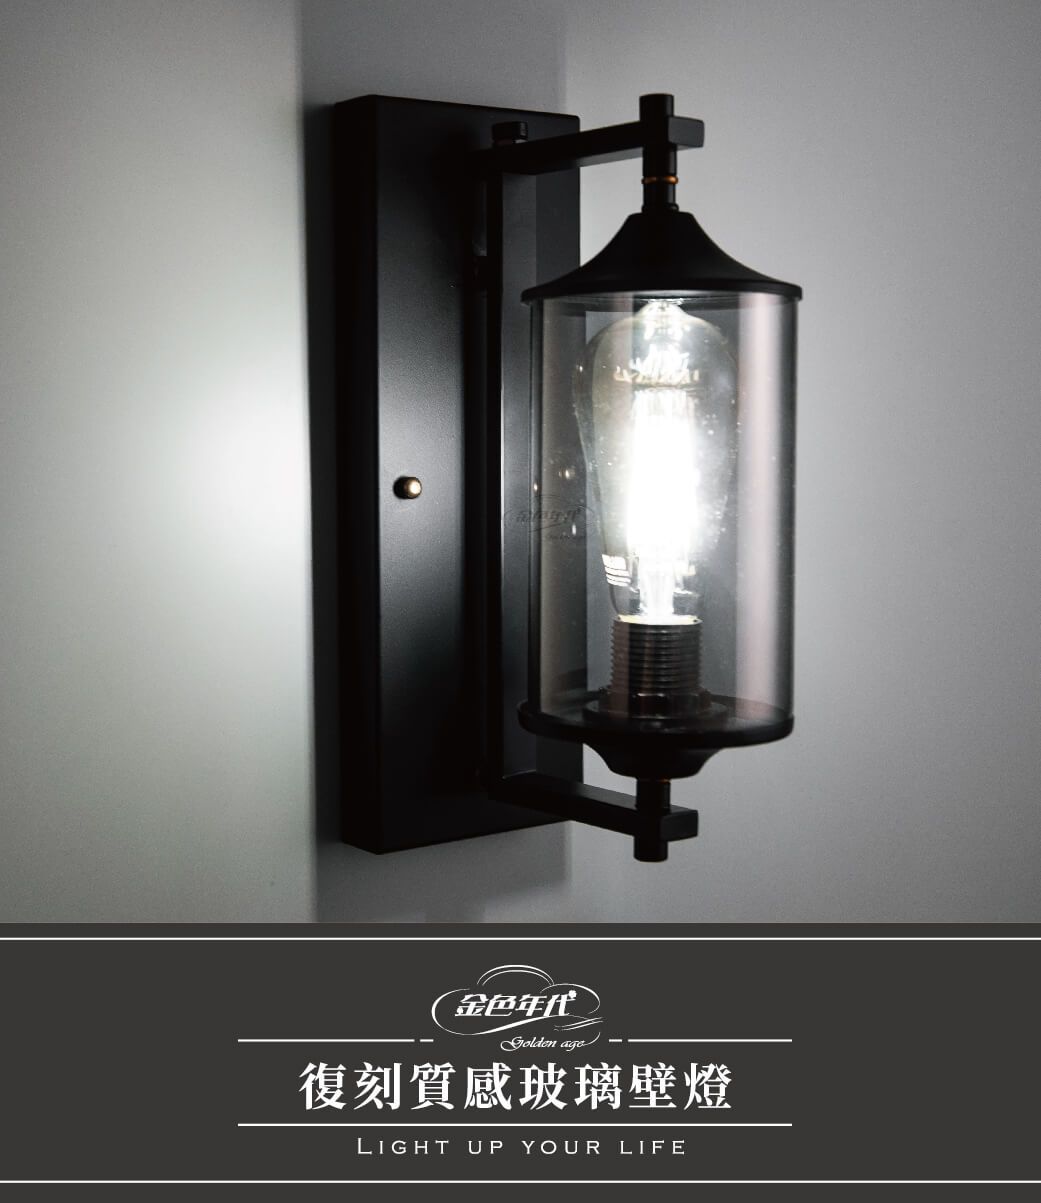 GA10官網圖文-復刻質感玻璃壁燈_01